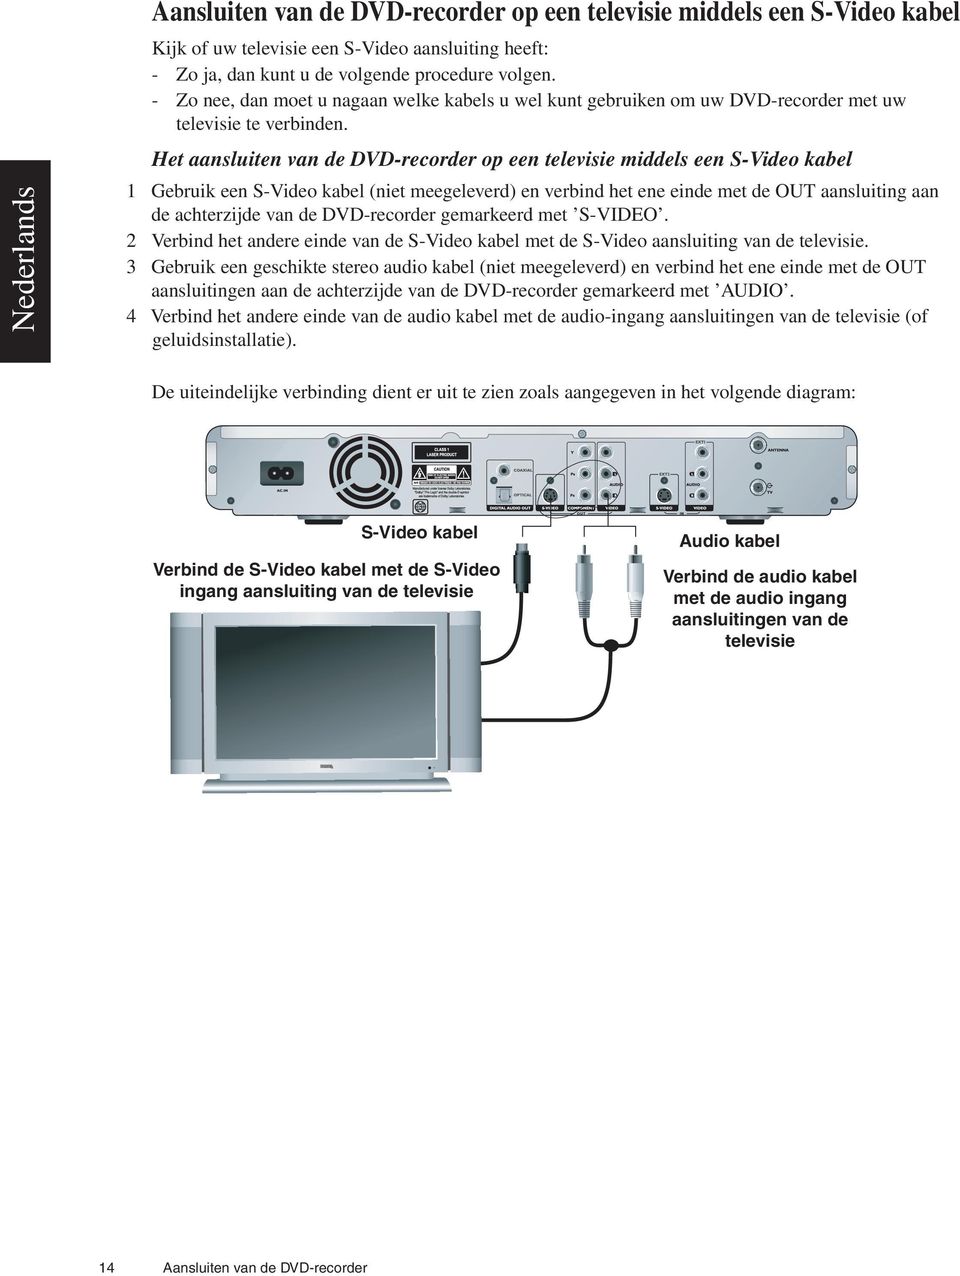 Het aansluiten van de DVD-recorder op een televisie middels een S-Video kabel 1 Gebruik een S-Video kabel (niet meegeleverd) en verbind het ene einde met de OUT aansluiting aan de achterzijde van de